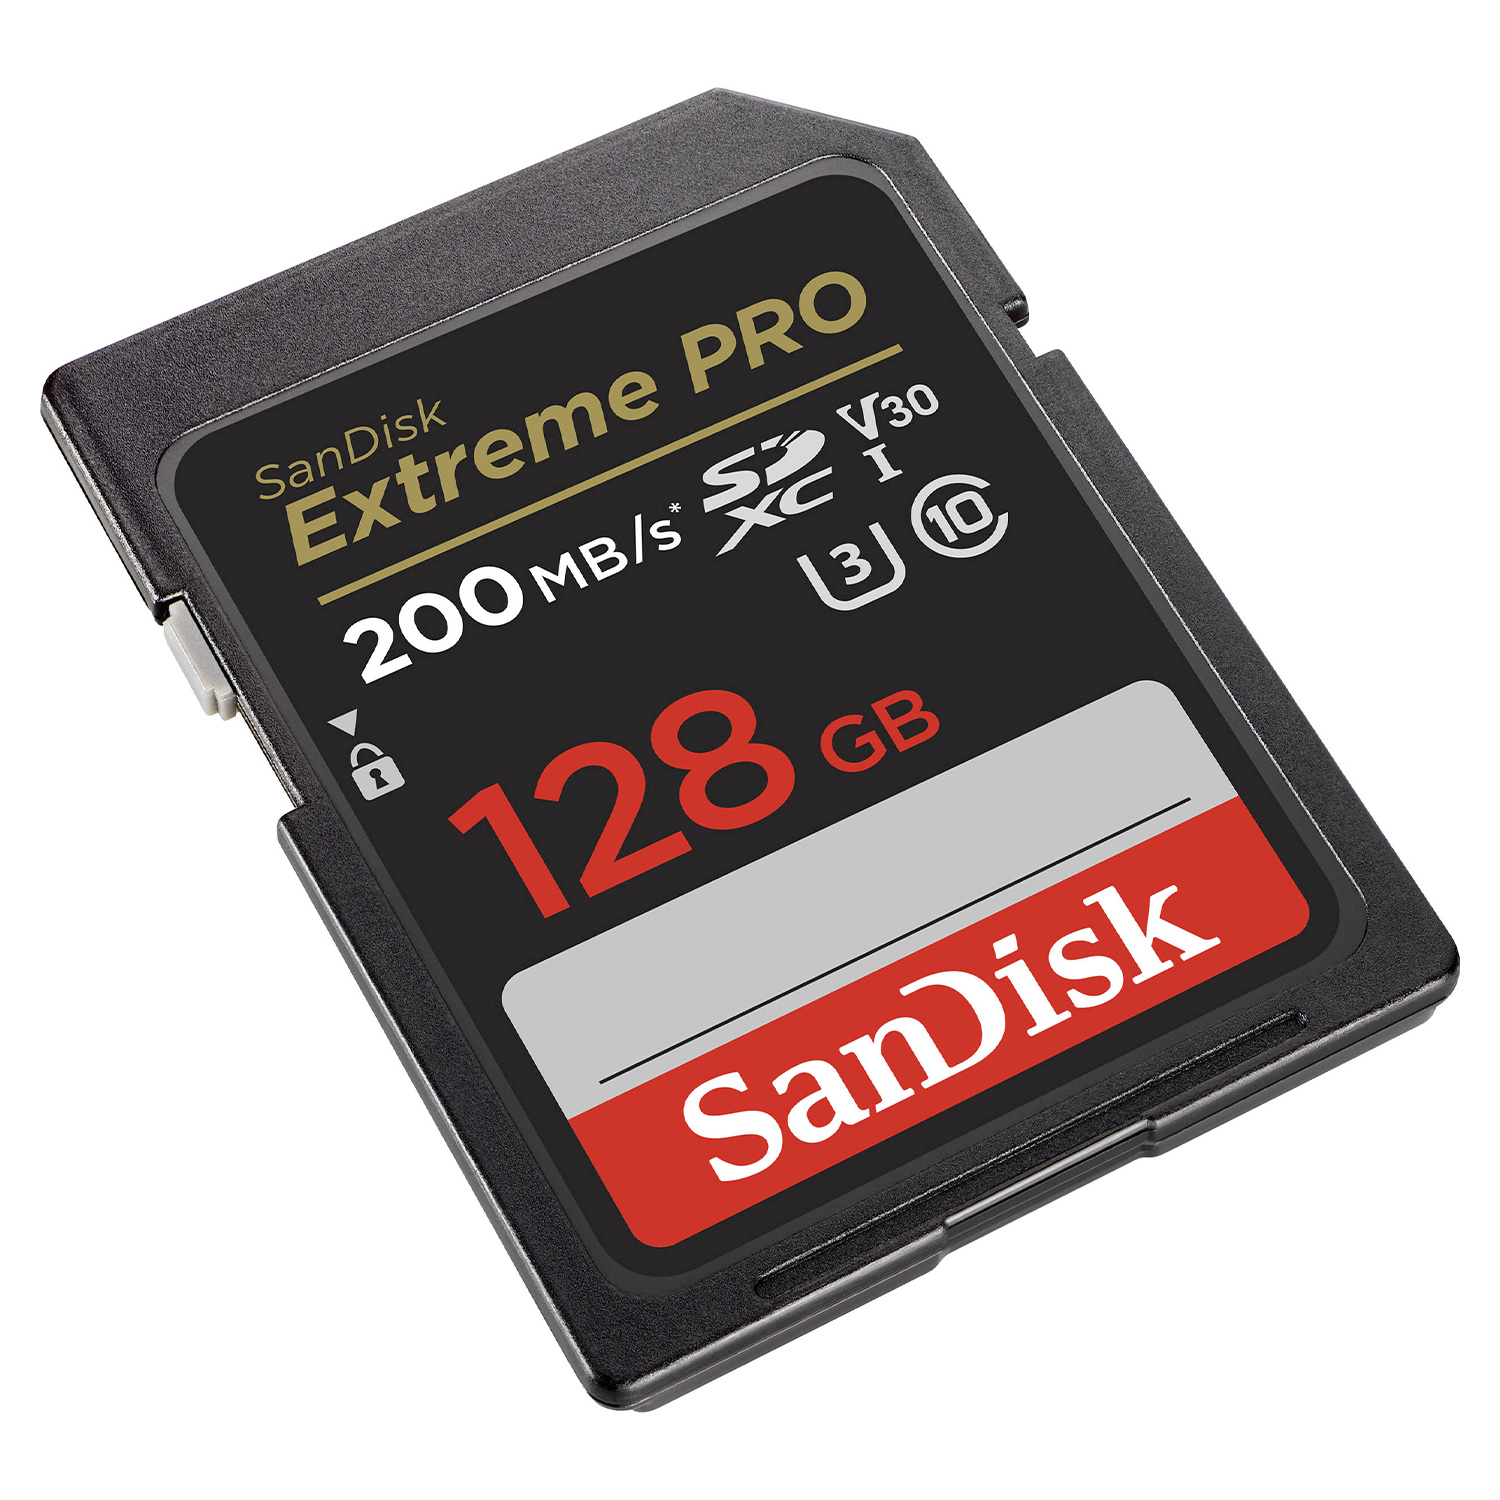 Cartão de Memória Sandisk Extreme Pro 128GB / U3 / 200MBs - SDSDXXD-128G-GN4IN